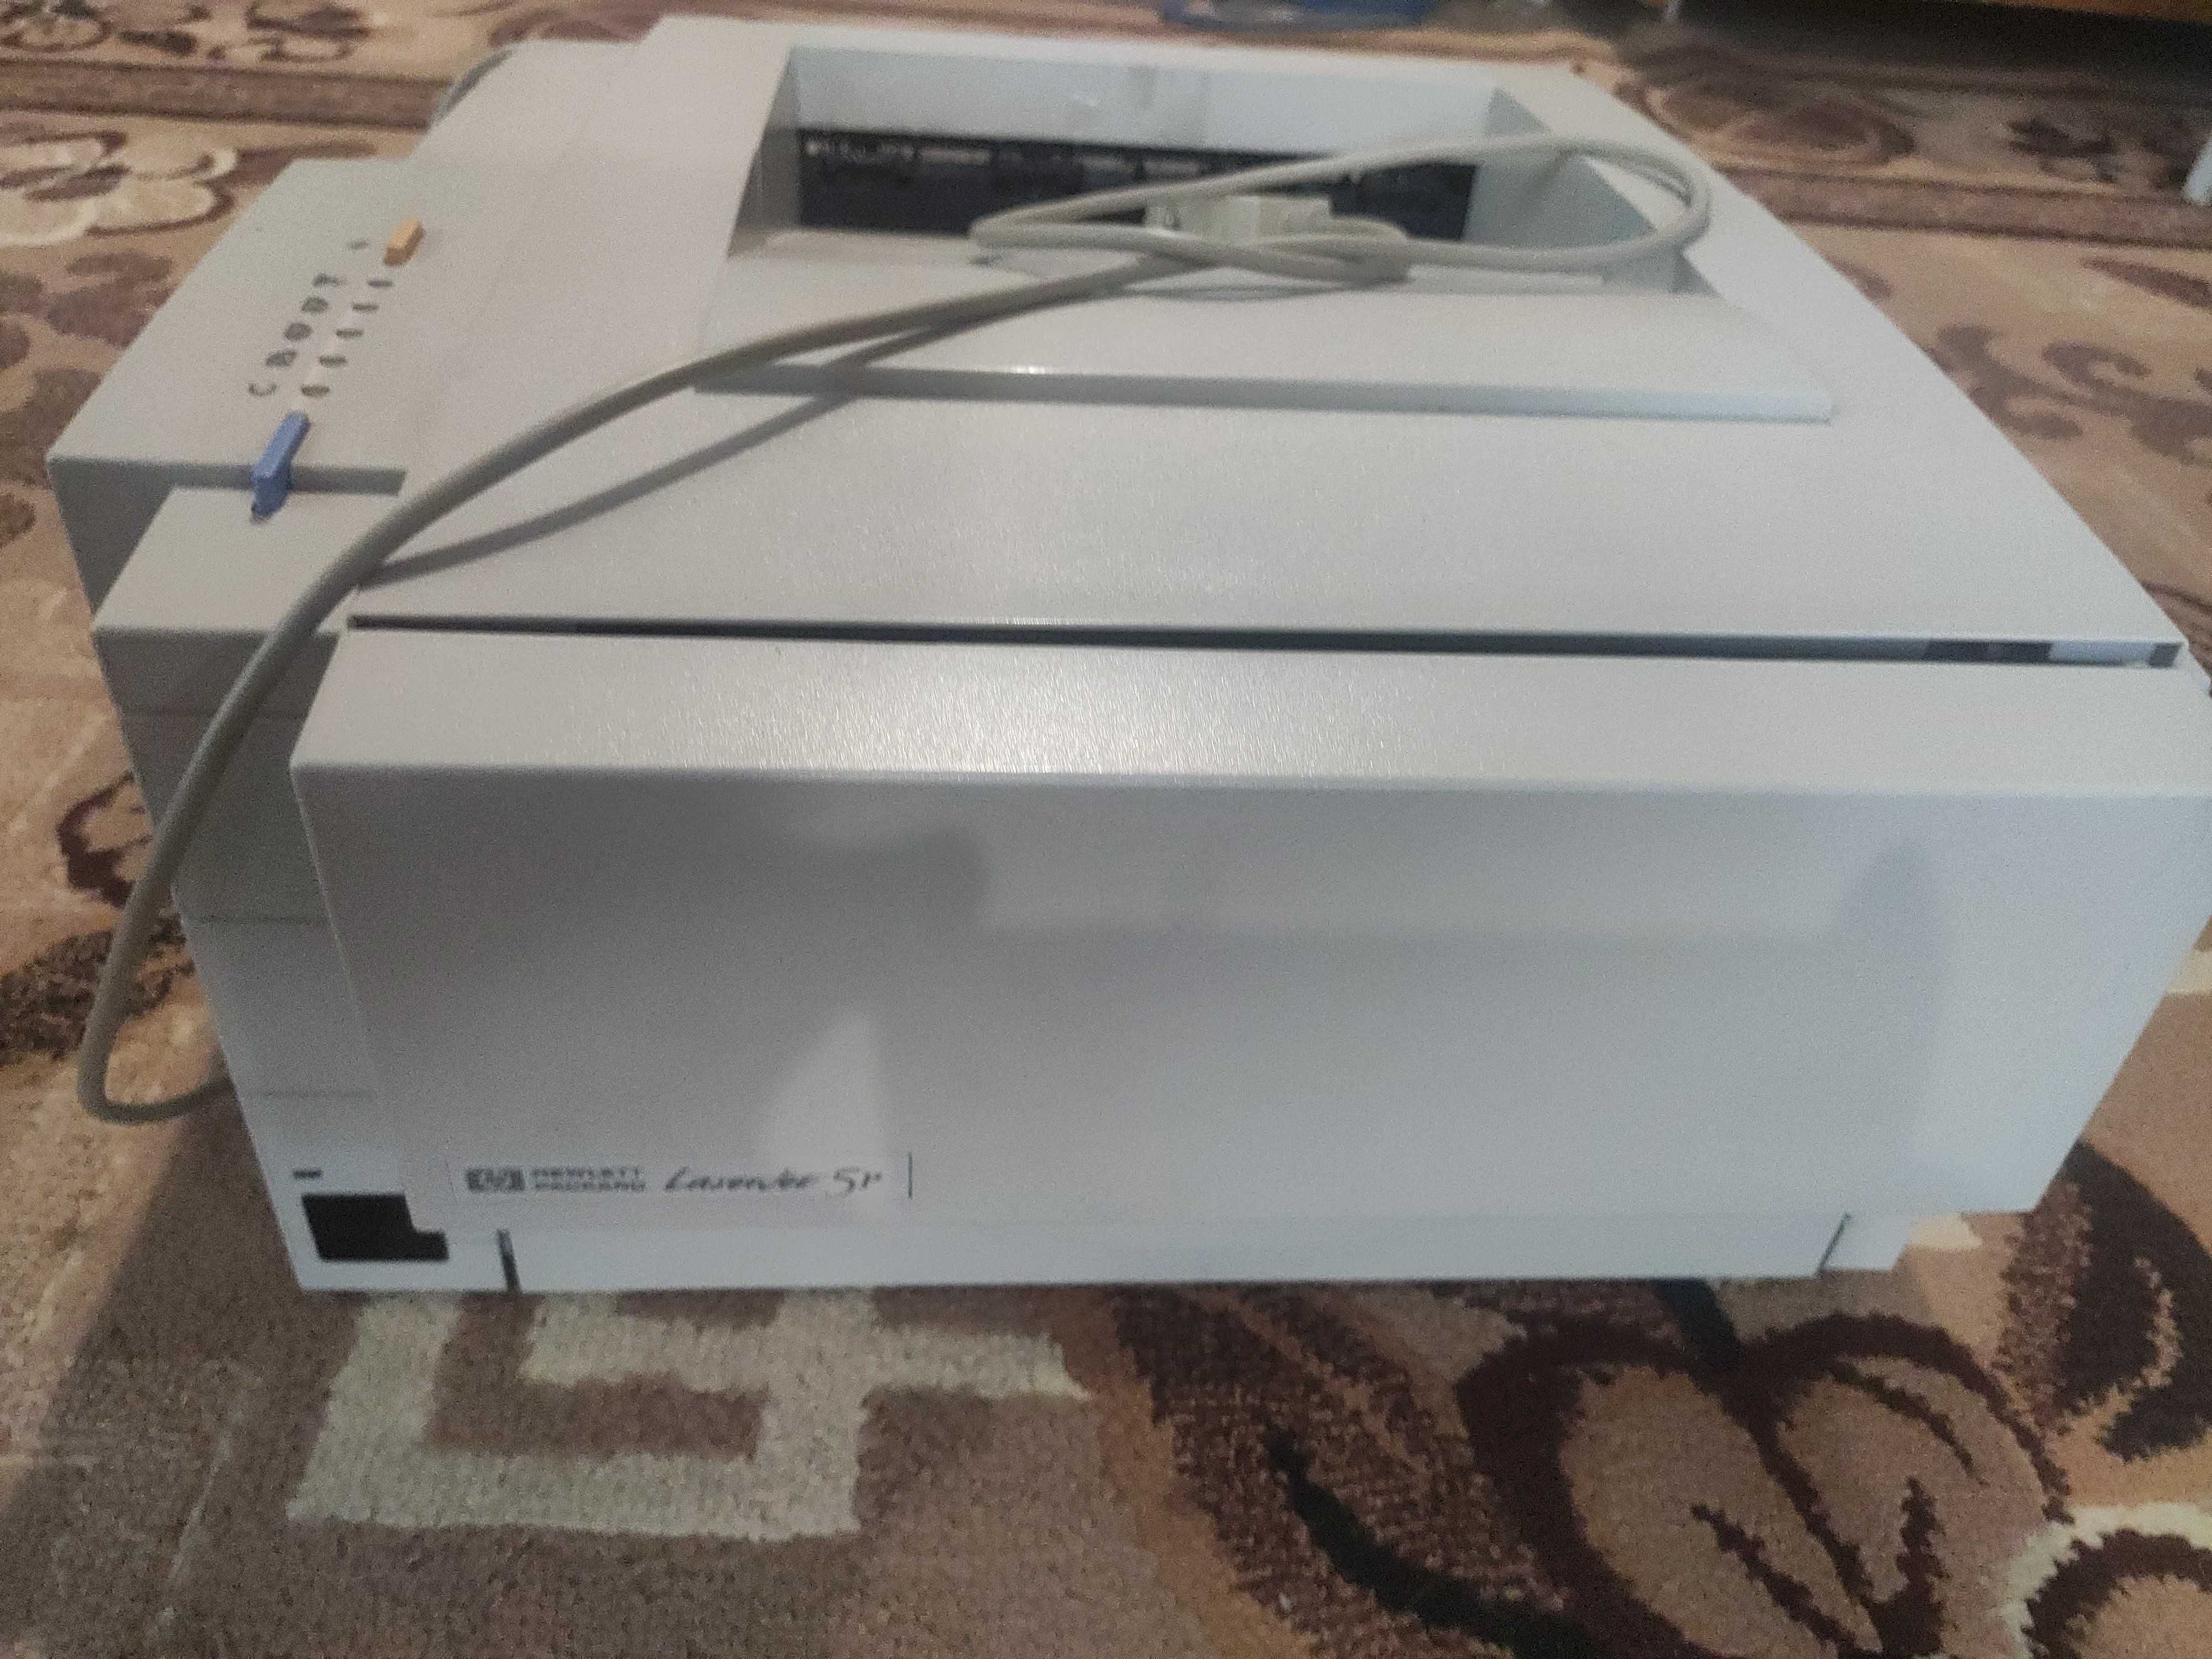 Монохромный лазерный принтер HP LaserJet 5P